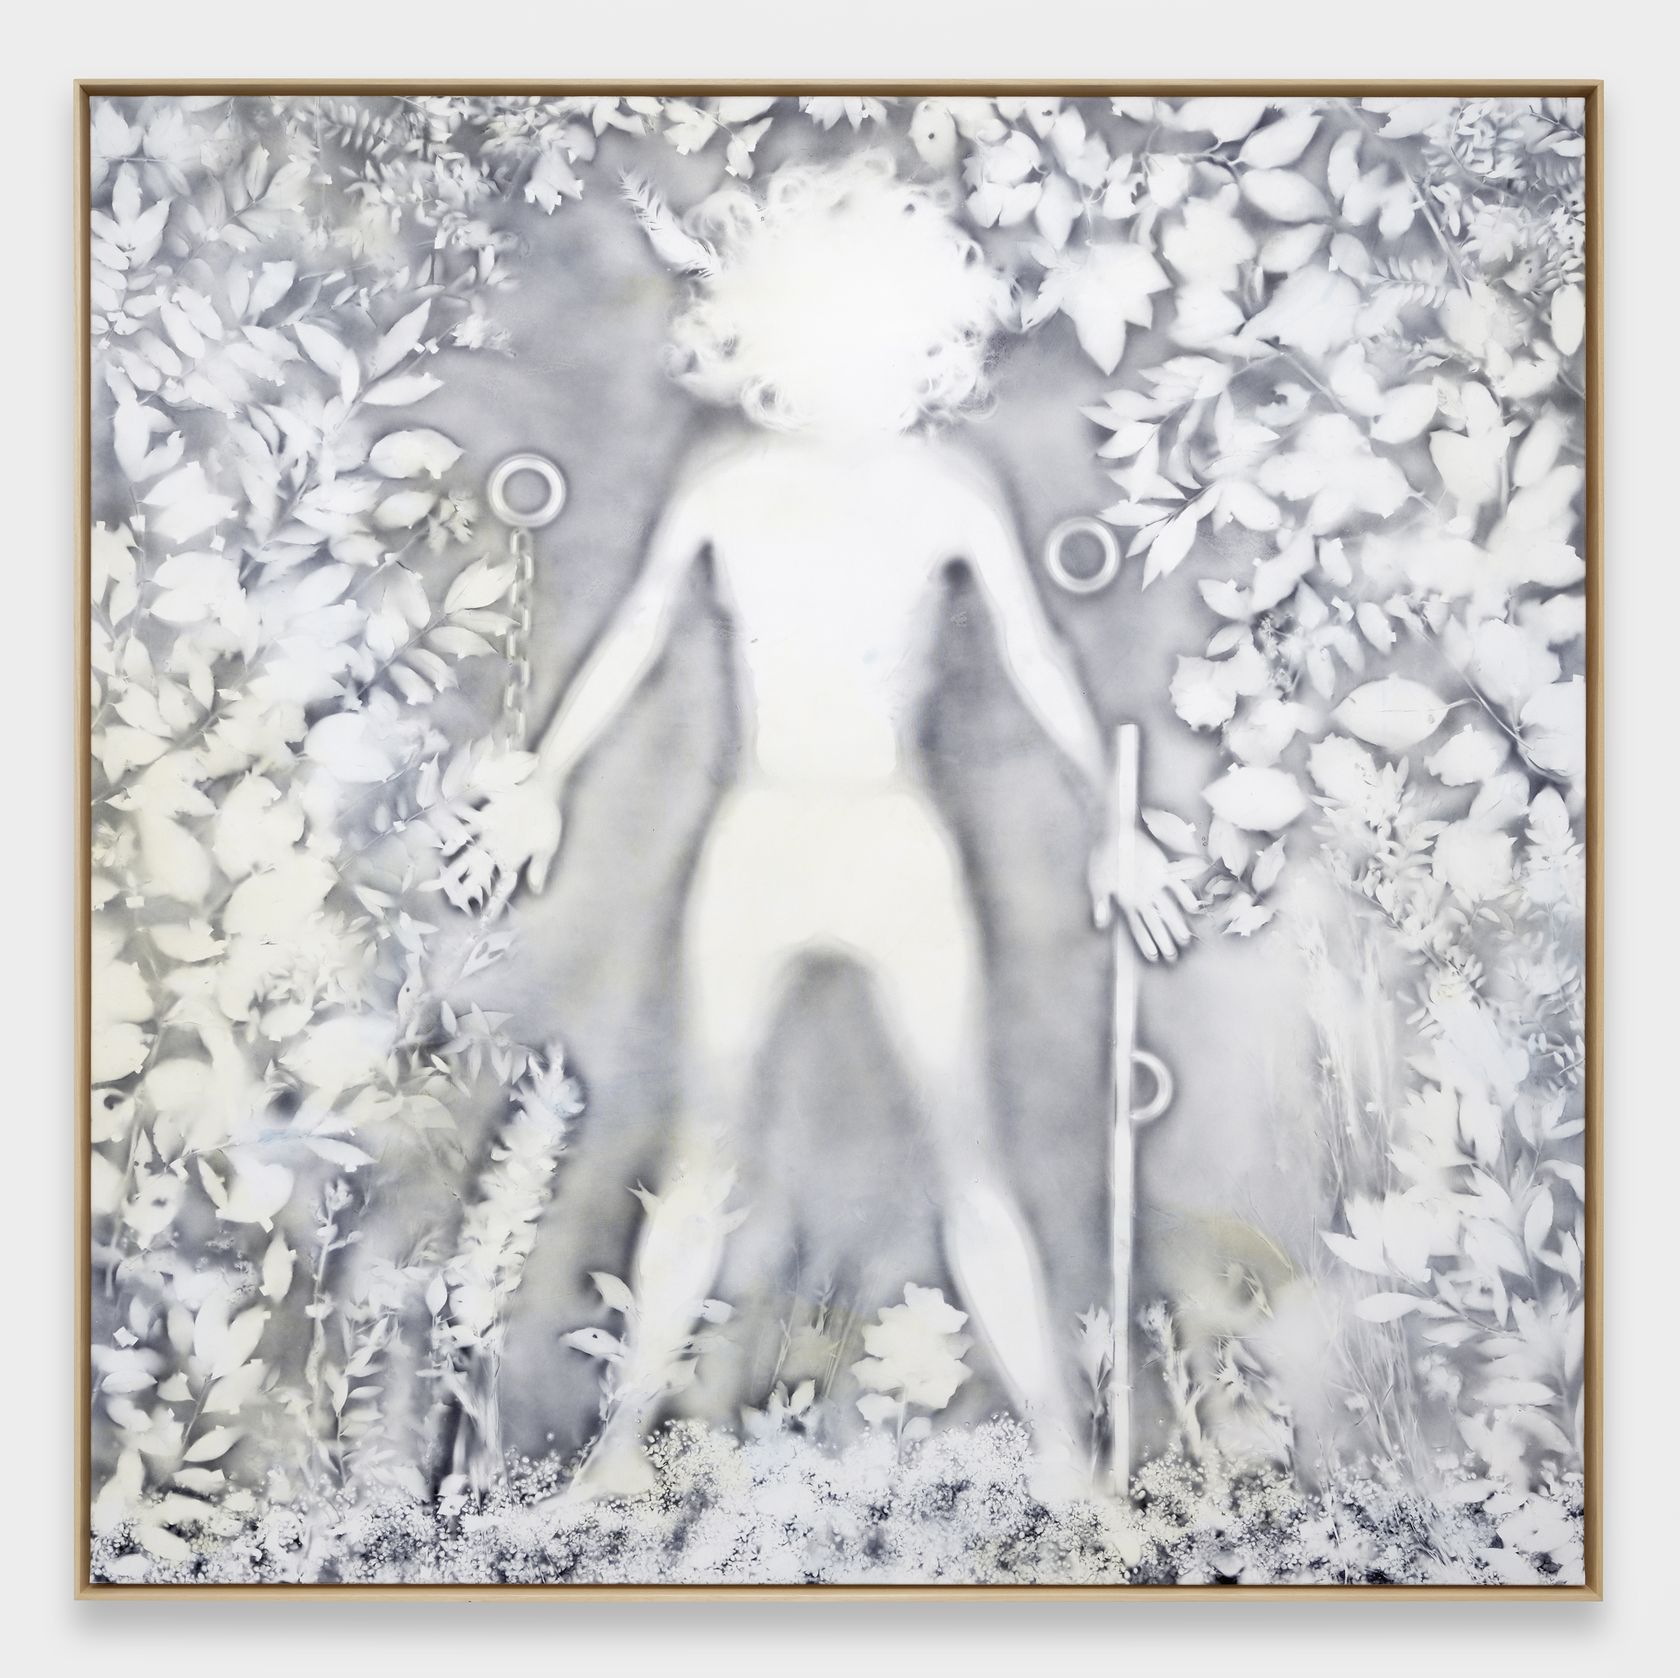 Hippolyte Hentgen, De la série les résistantes, 2021 Acrylique et encre sur toile192 × 193.5 cm / 75 5/8 × 76 1/8 in. | 196 × 197 × 5.5 cm / 77 1/8 × 77 1/2 × 2 1/8 in. (encadré/framed)